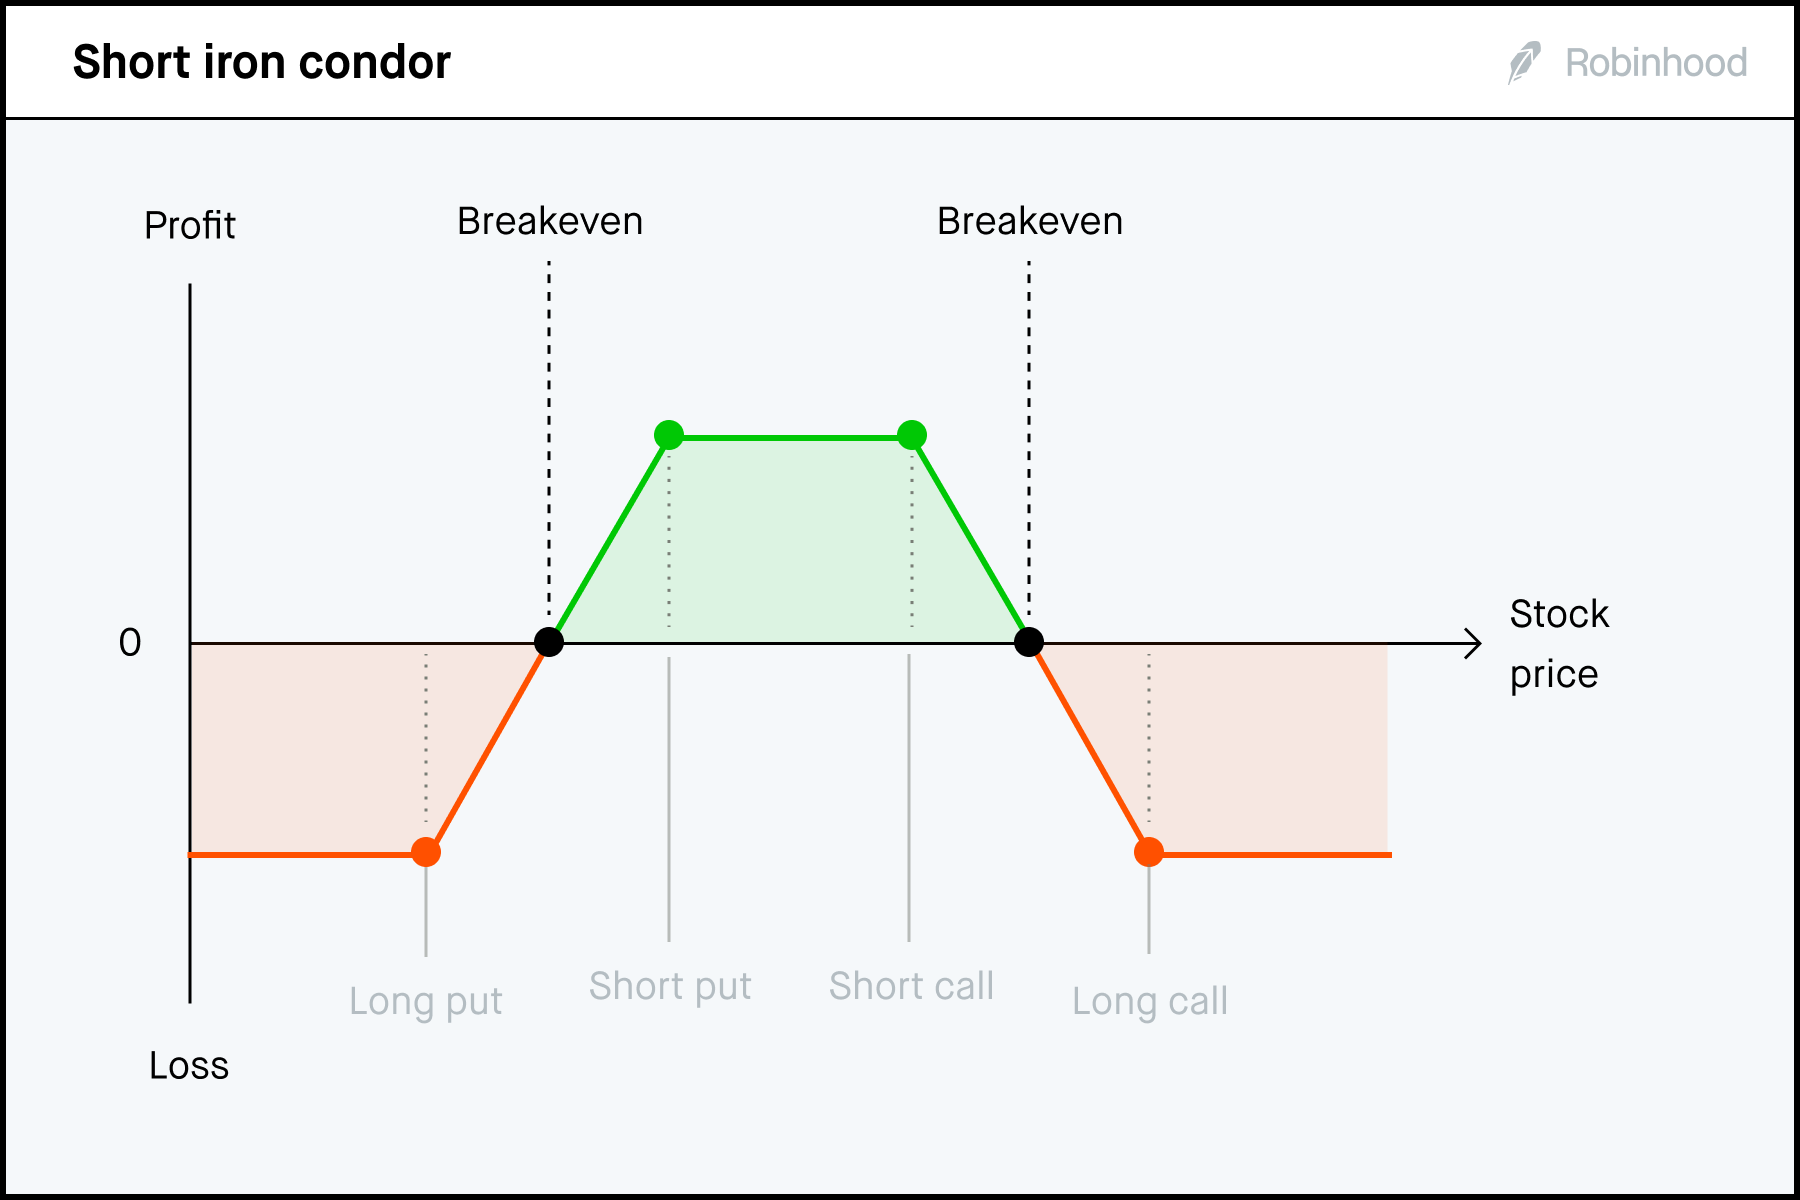 Short iron condor P/L chart 3x